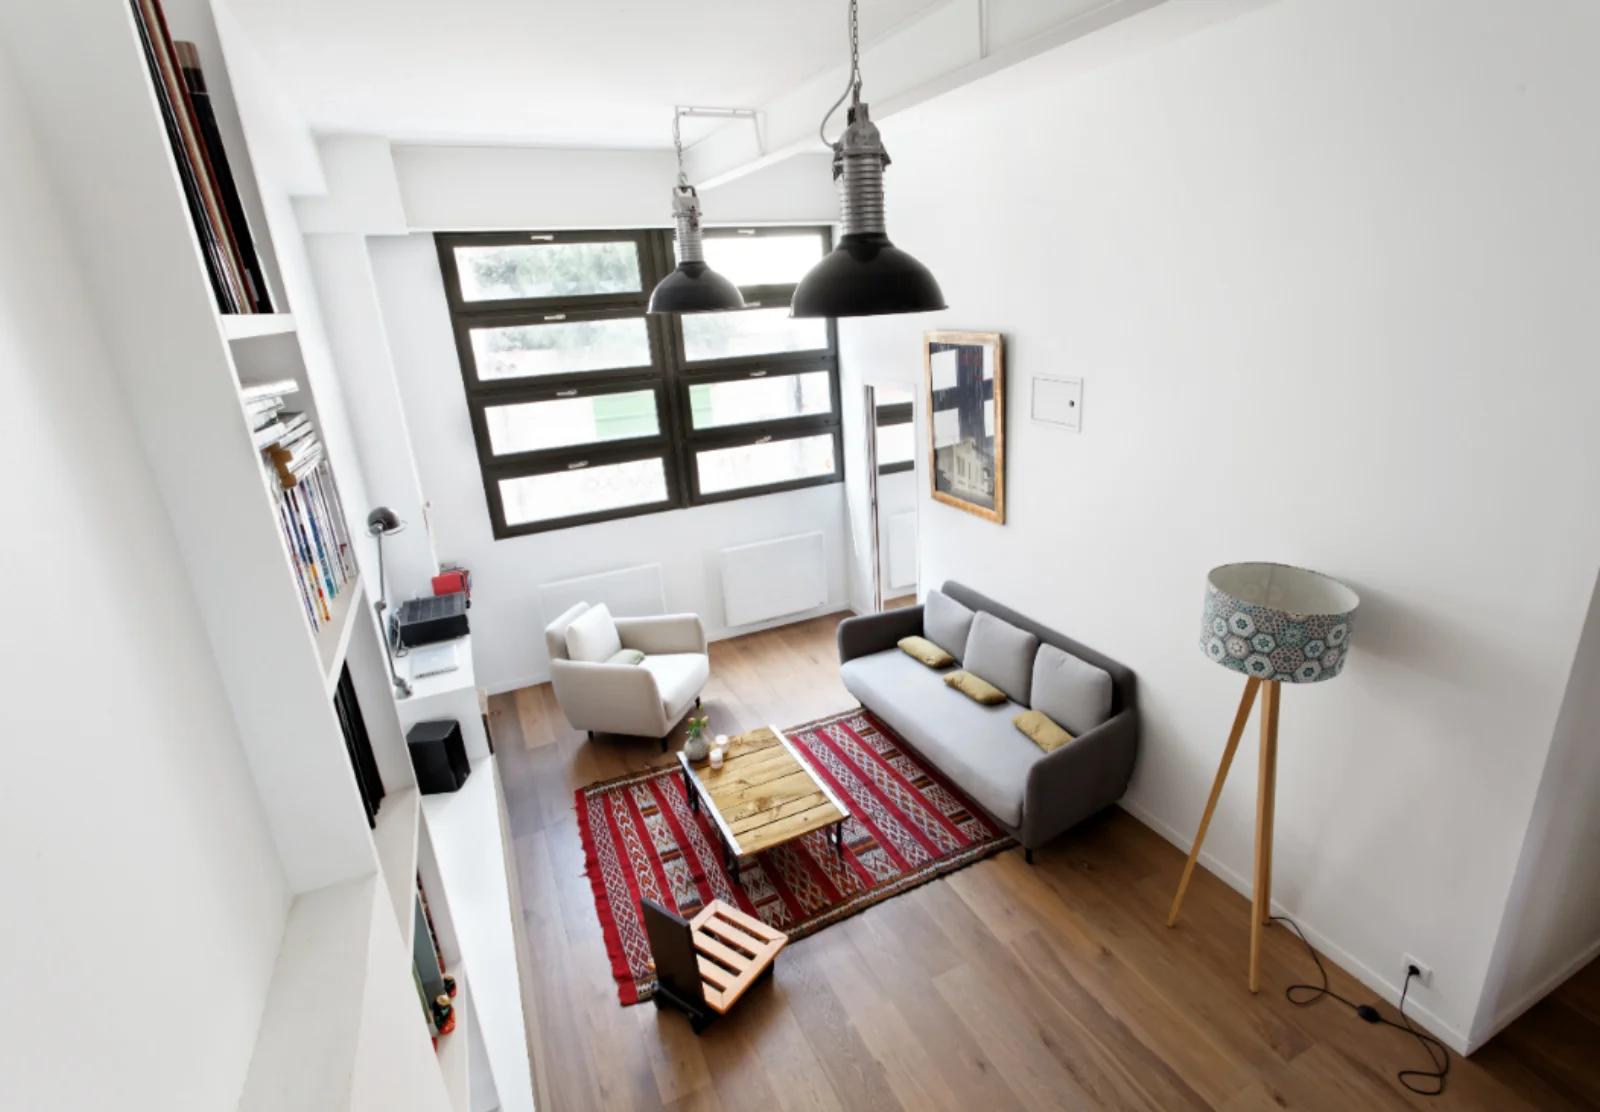 Salon dans 6 chambres | terrasse | loft d'architecte - 1